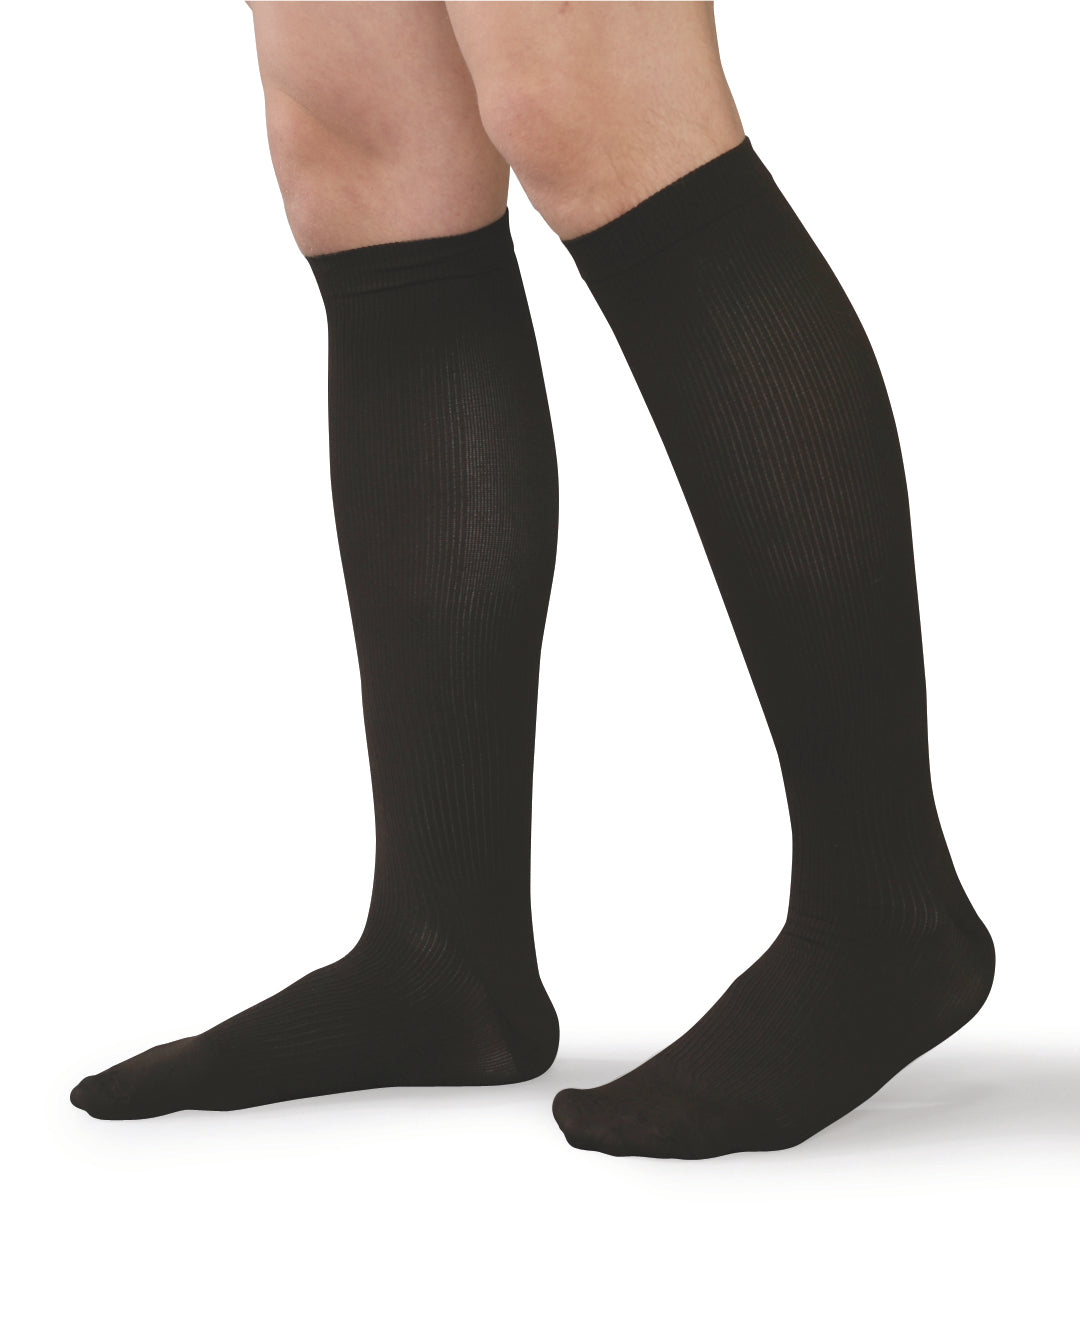 Men's Black Compression Support Medium Socks (fits shoe size 7.5-10) 2 ...